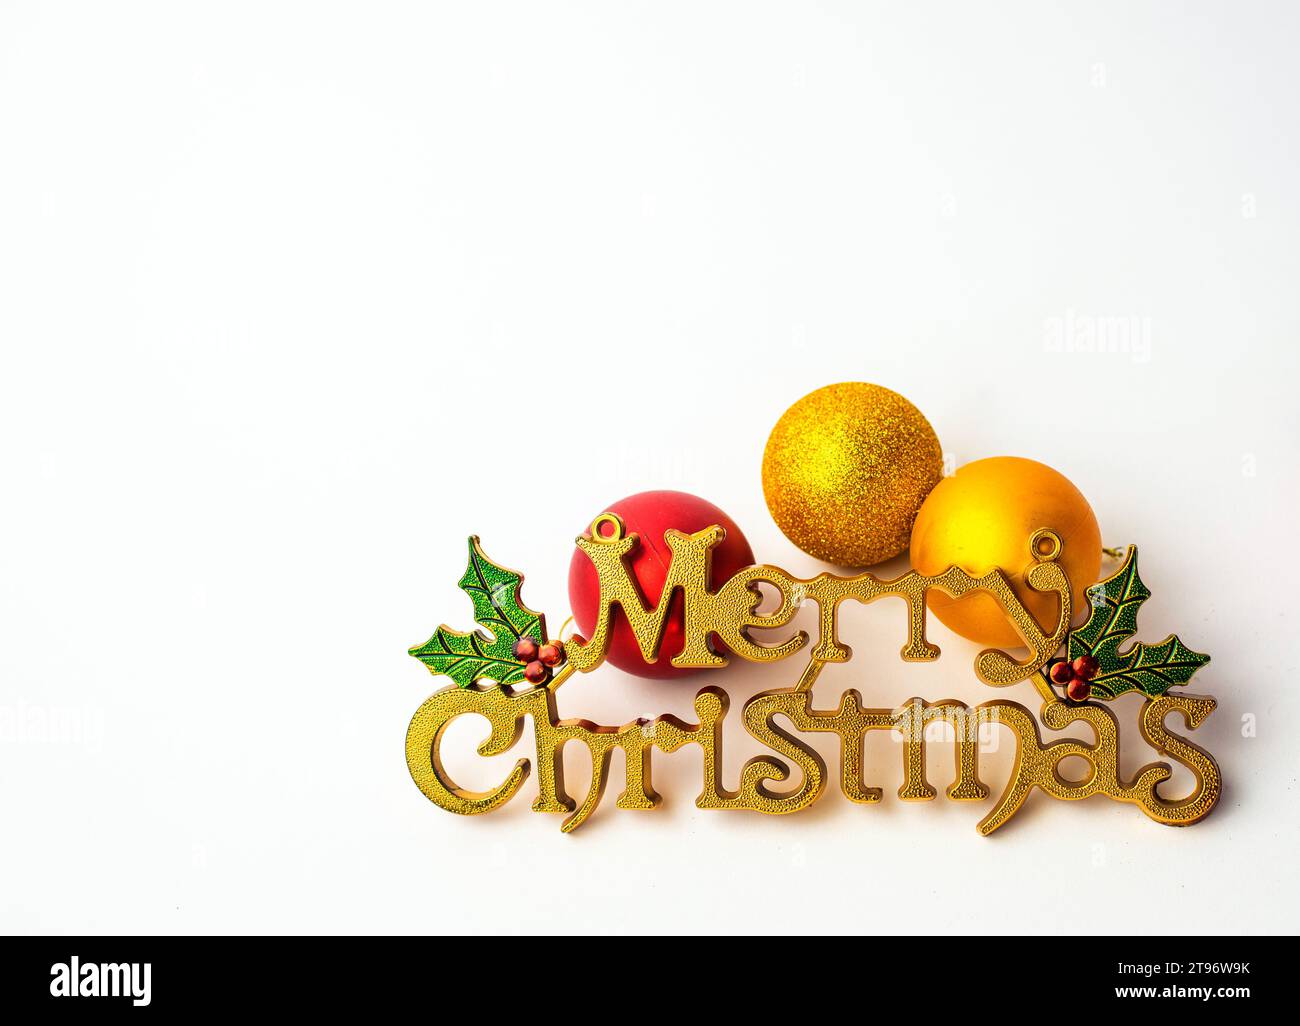 Yellow - Merry Christmas Icon on a Plain white backdrop with xmas balls Stock Photo